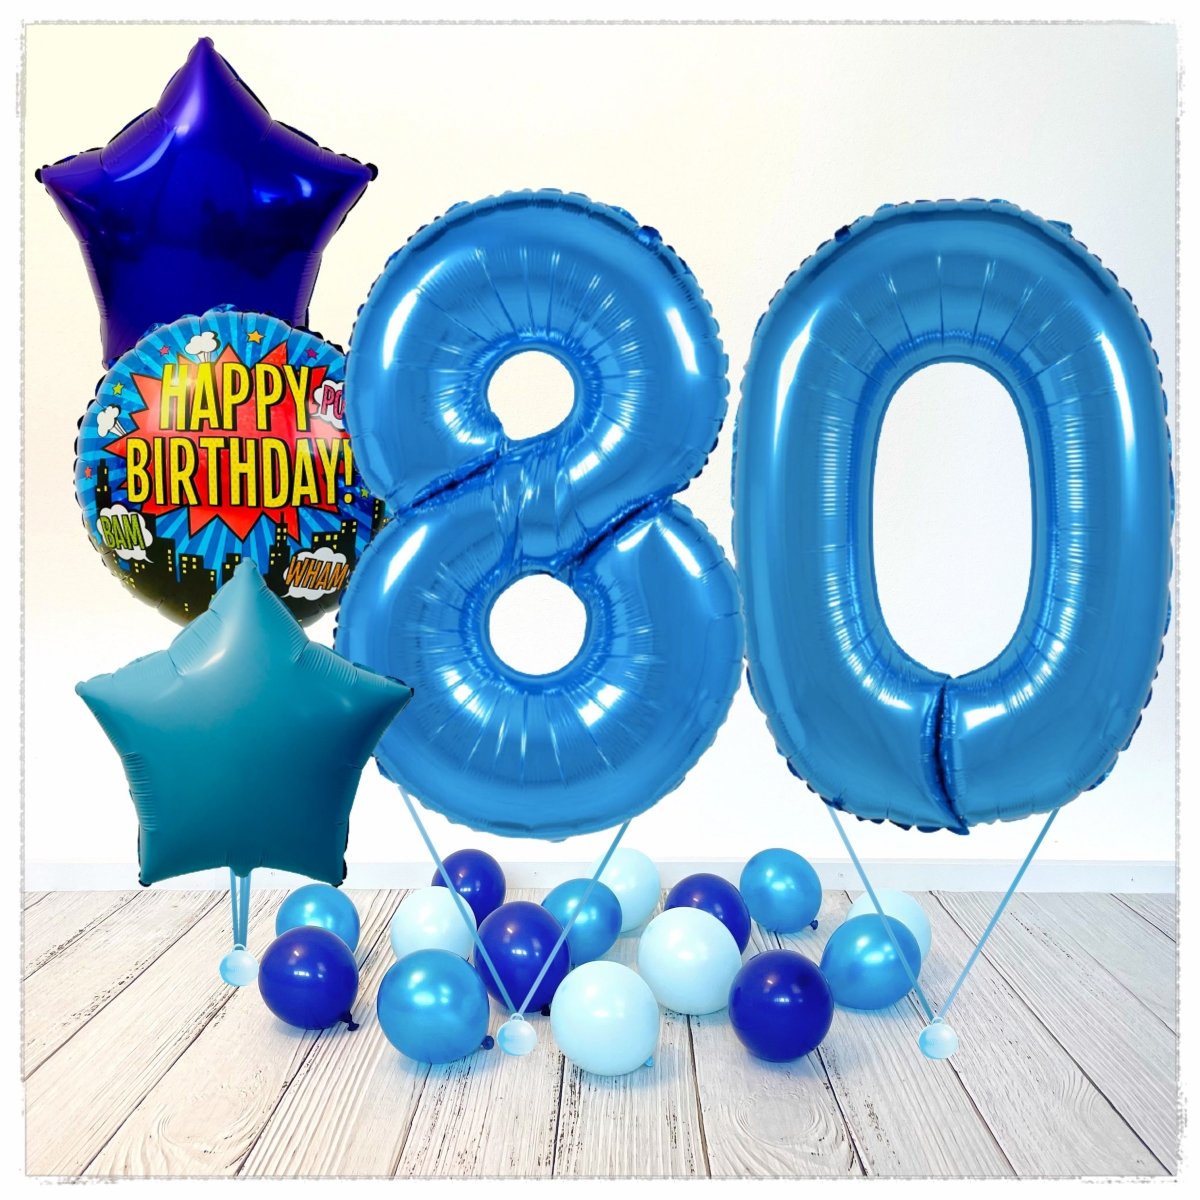 https://ballonking.ch/cdn/shop/products/zahlen-ballon-happy-birthday-blau-80-bouquet-mit-helium-gefullt-509319.jpg?v=1634051901